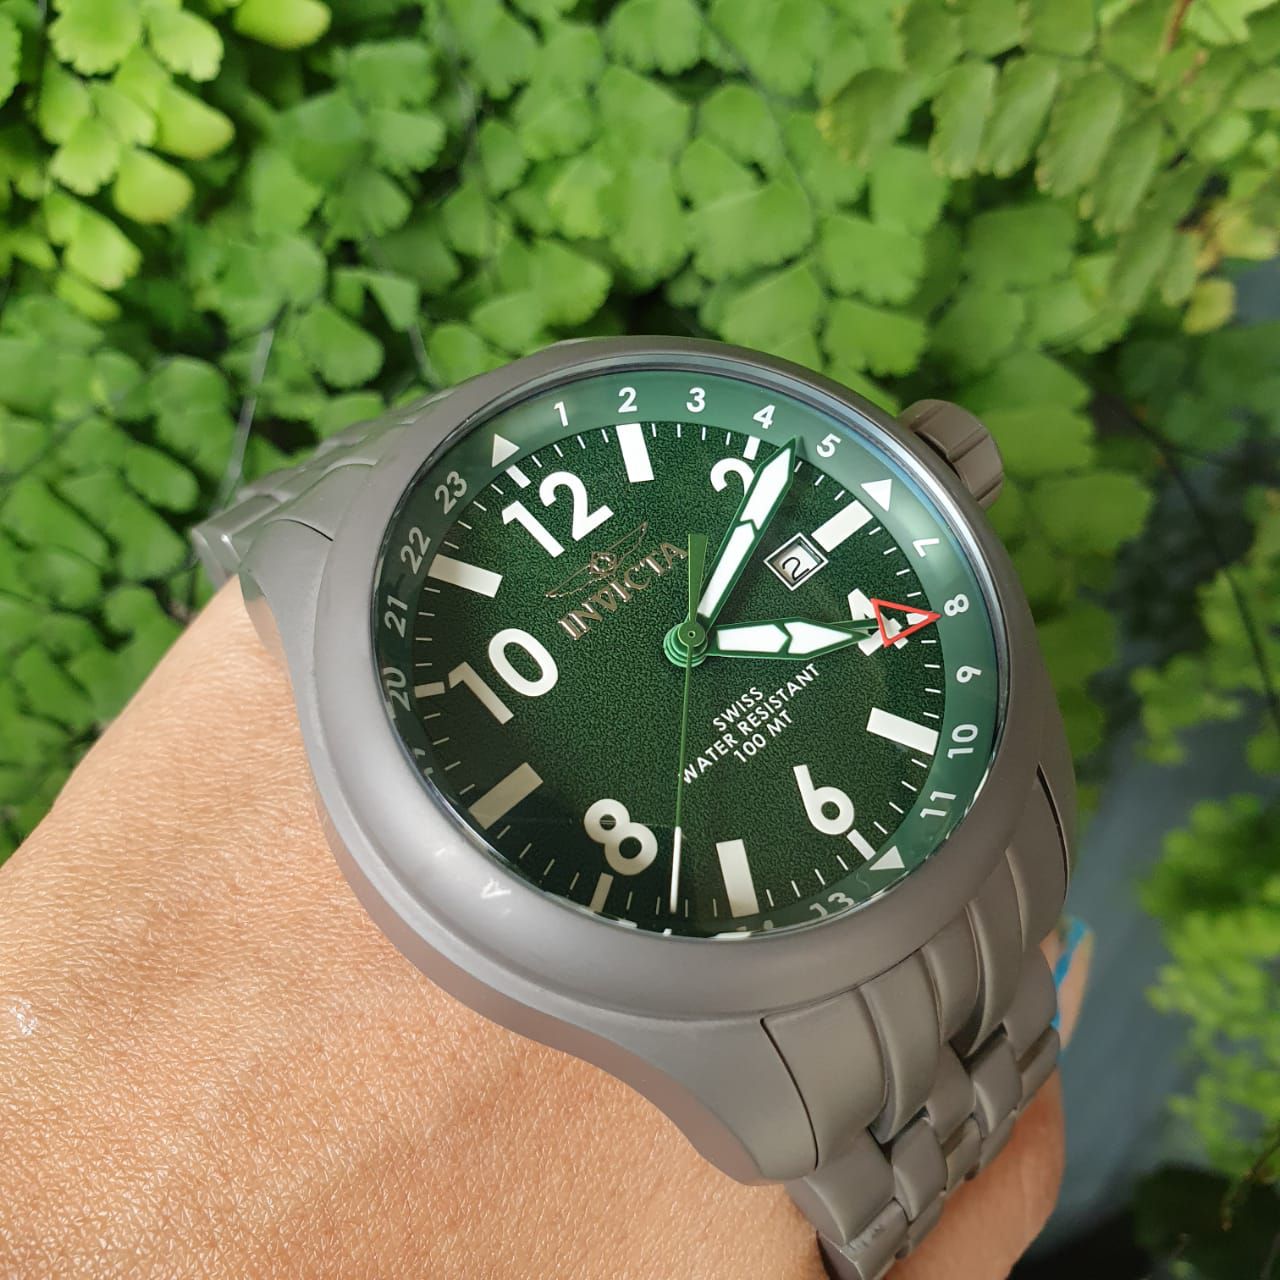 Relógio masculino Magnum prata, mostrador verde, analógico, com calendário.